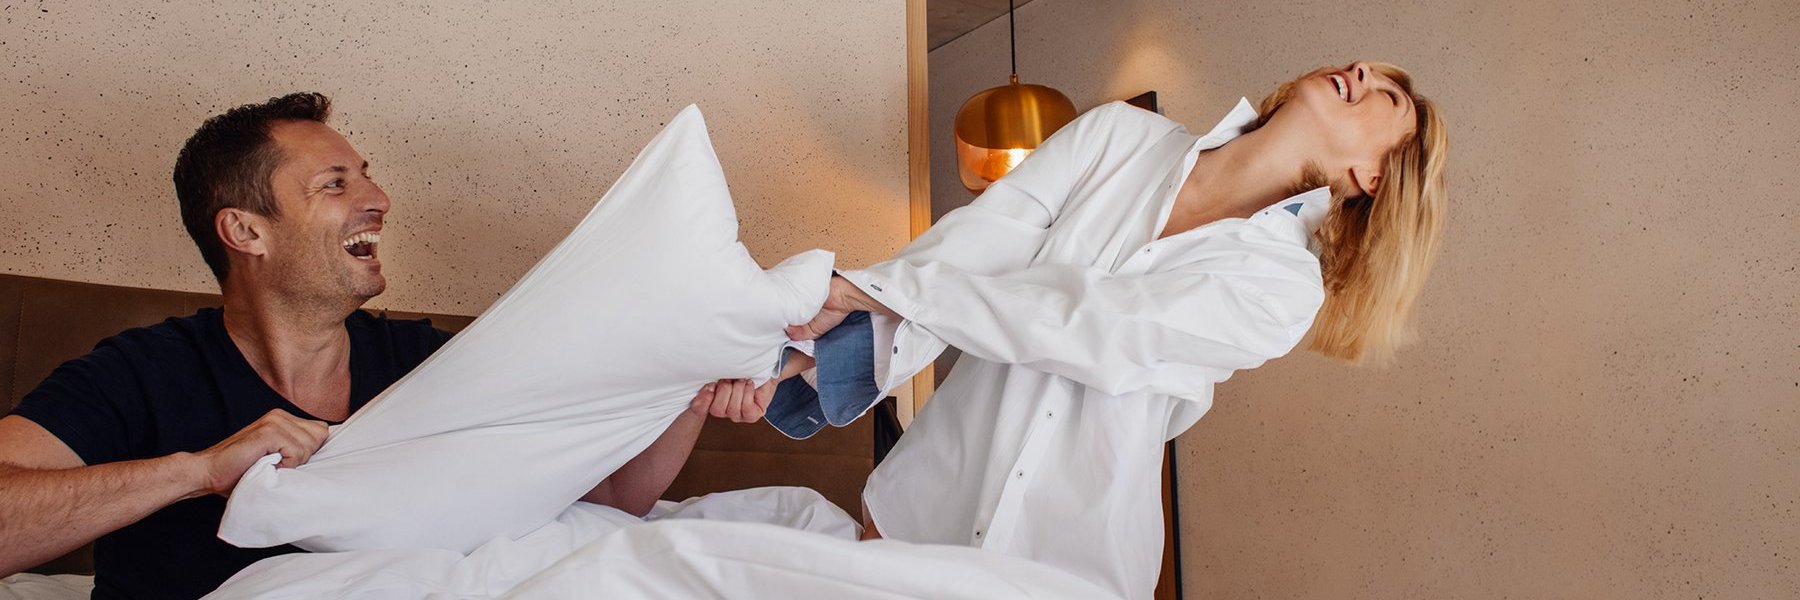 Mann und Frau lachen in einem Hotelbett und streiten sich um einen Kopfpolster